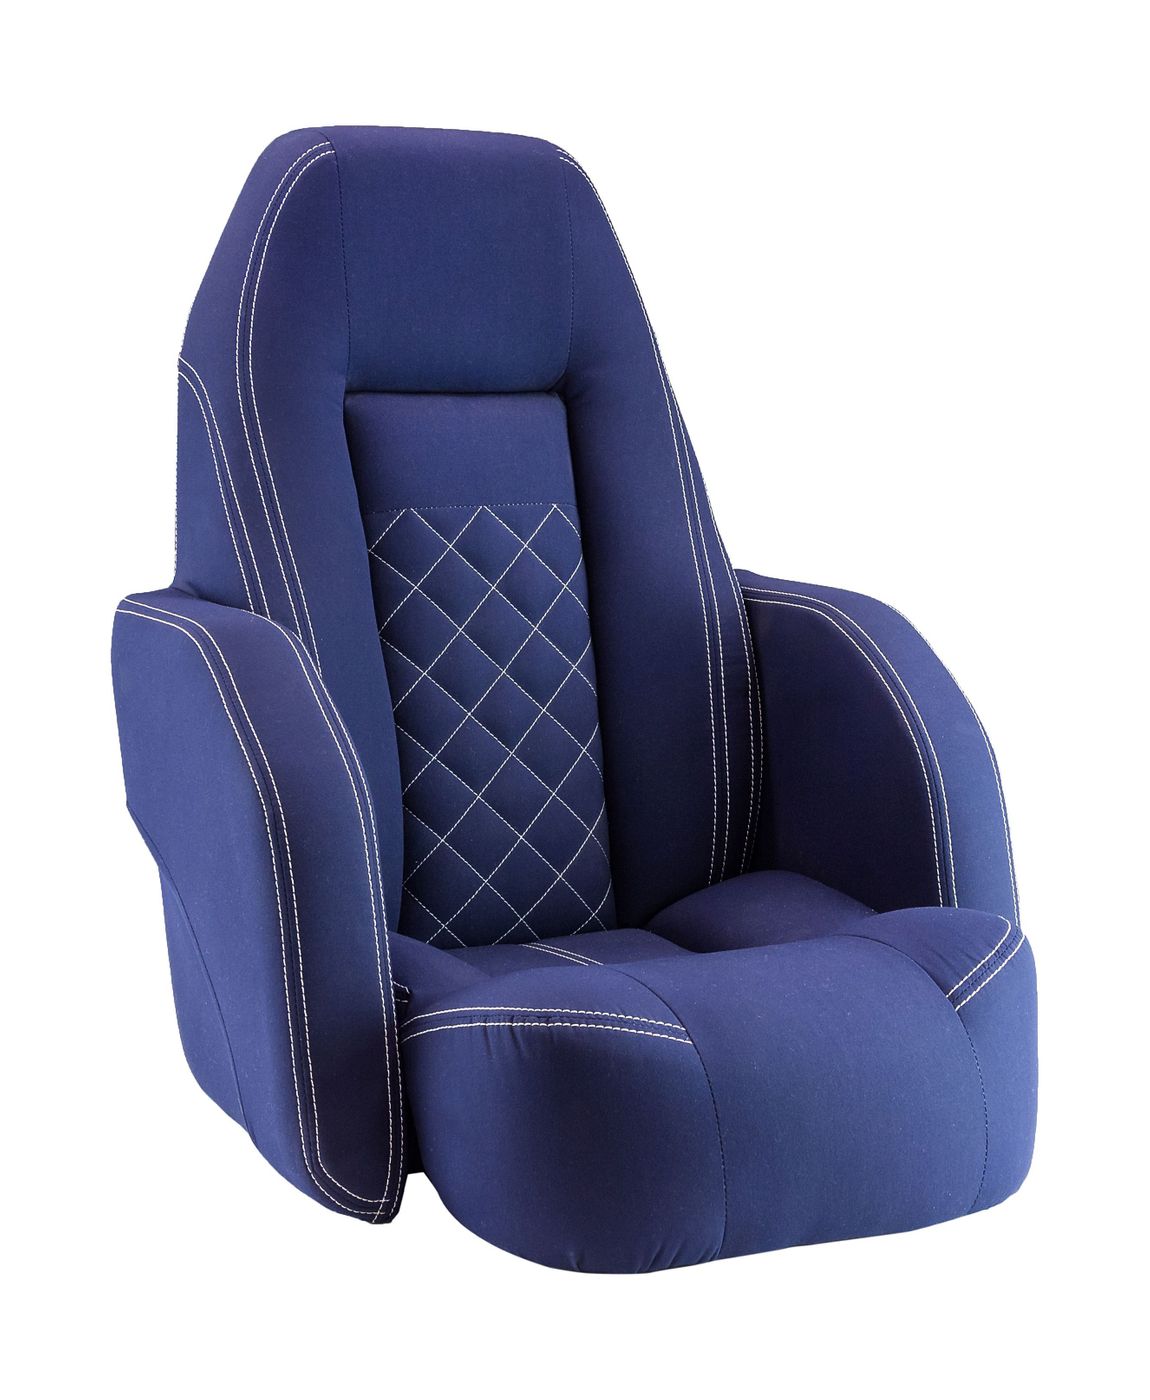 Кресло ROYALITA мягкое, подставка, обивка ткань Markilux темно-синяя 570000395 подставка под кресло с креплением на рундук банку 1104010ns